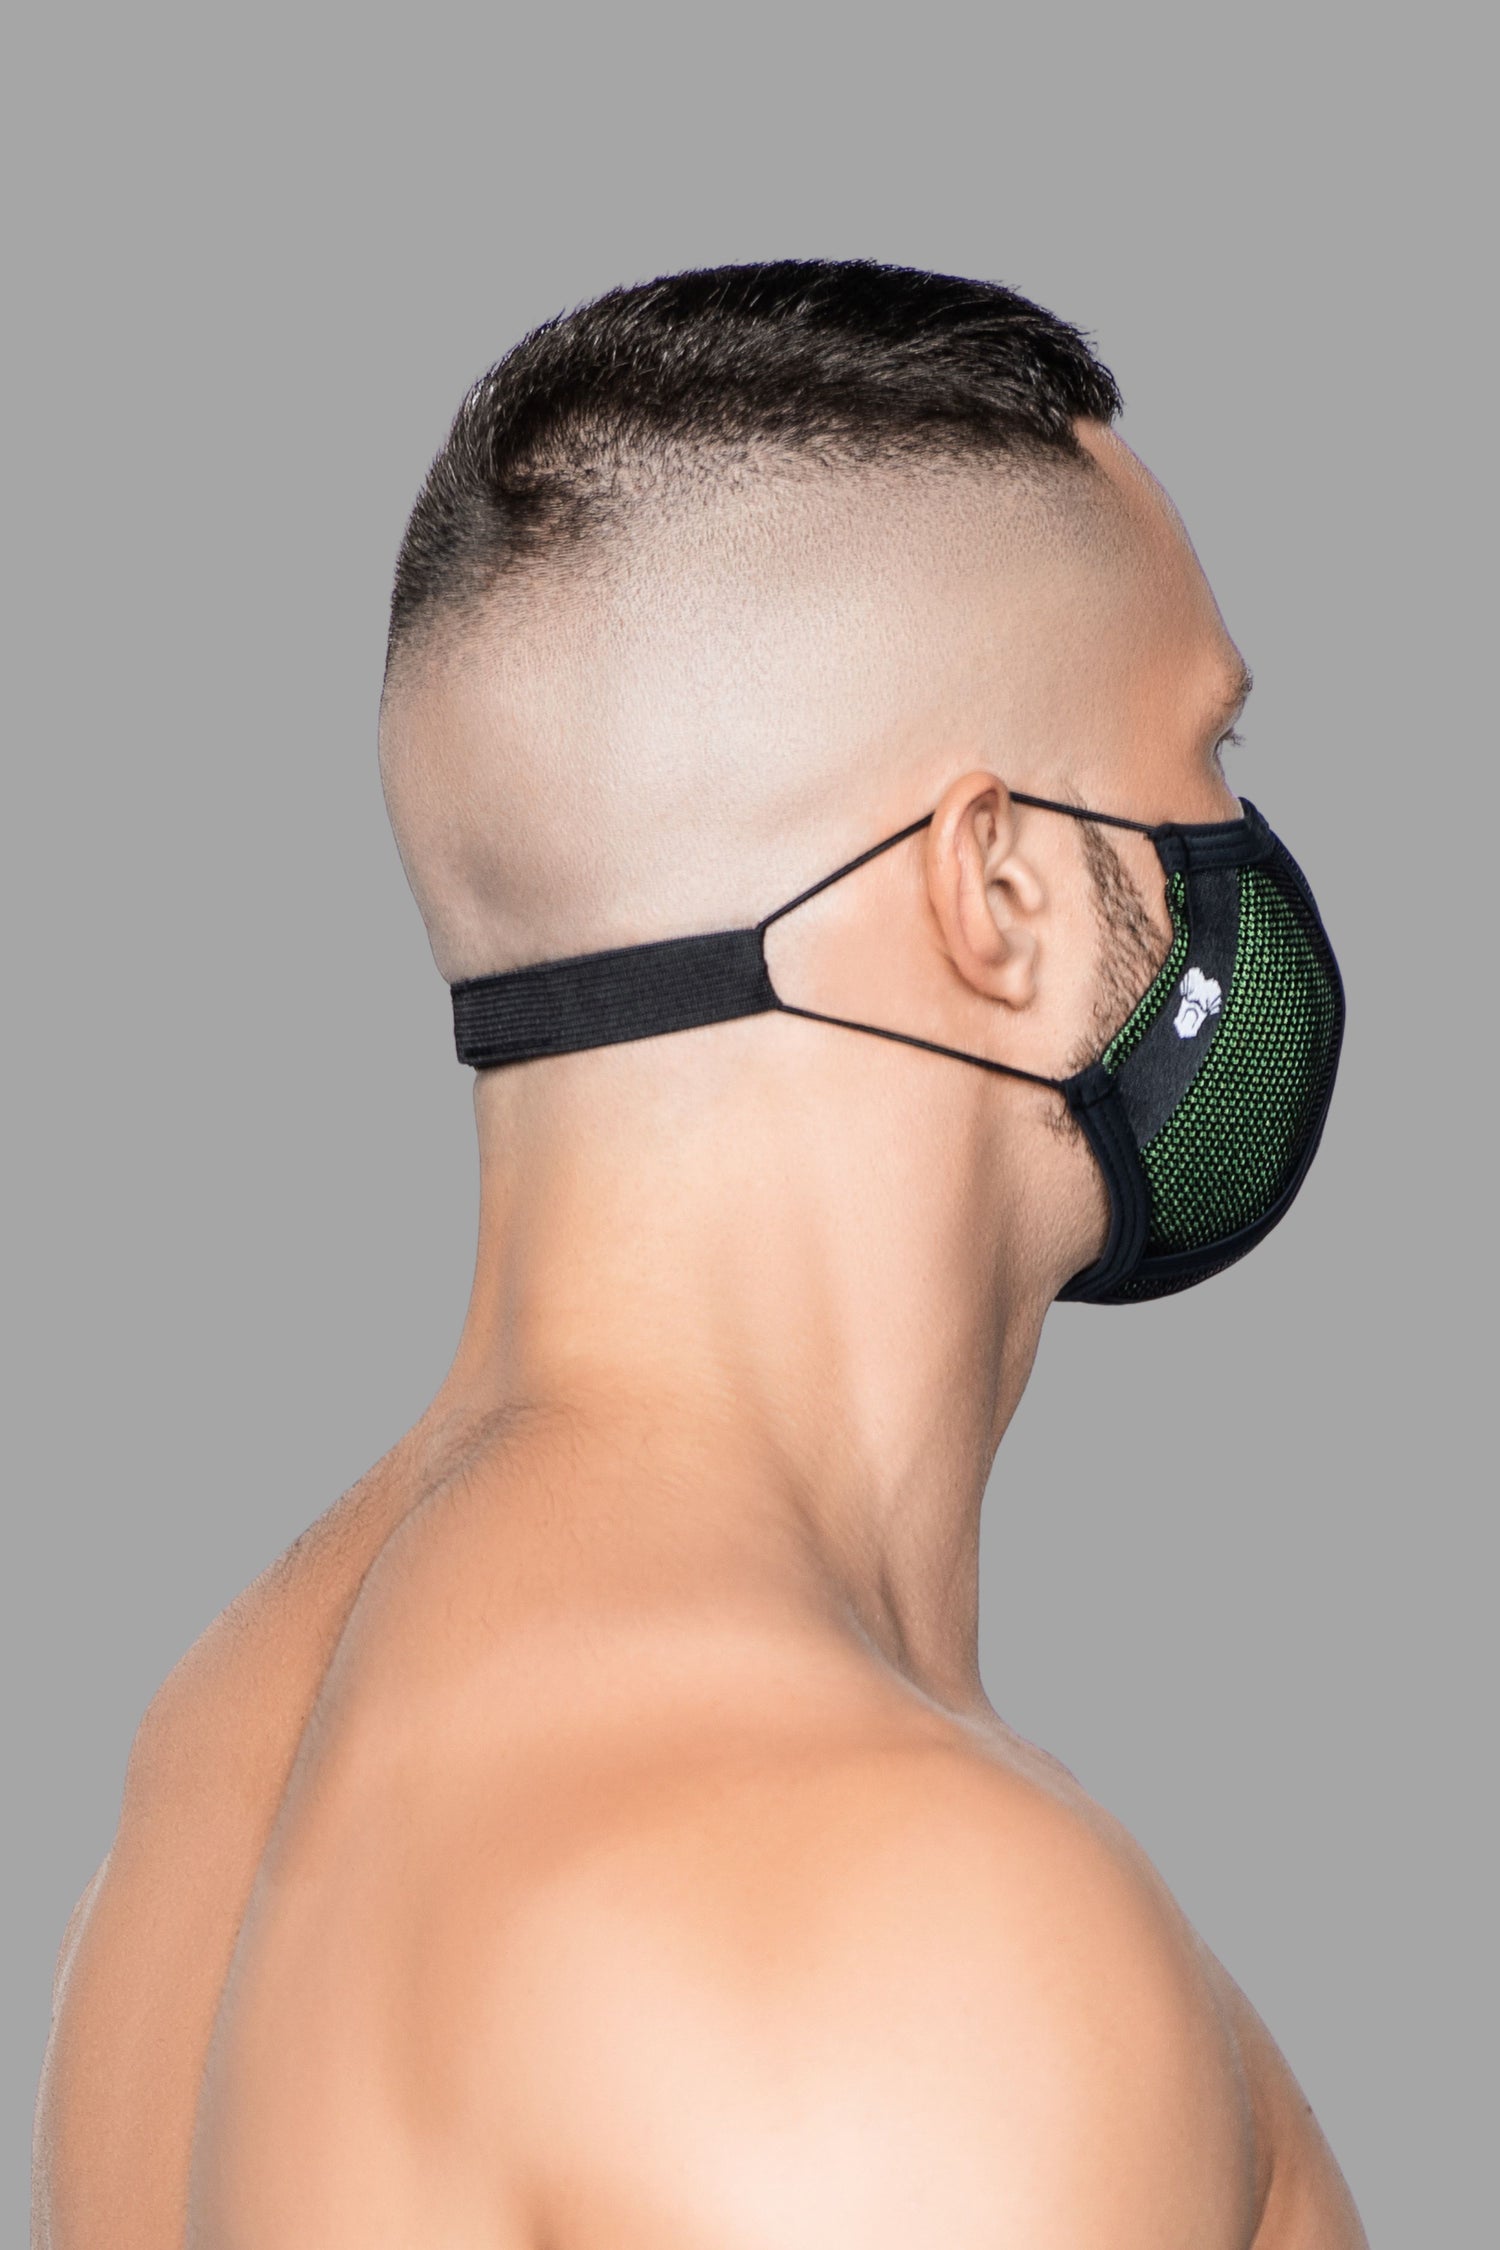 Leven 3D-masker. Groen+Zwart